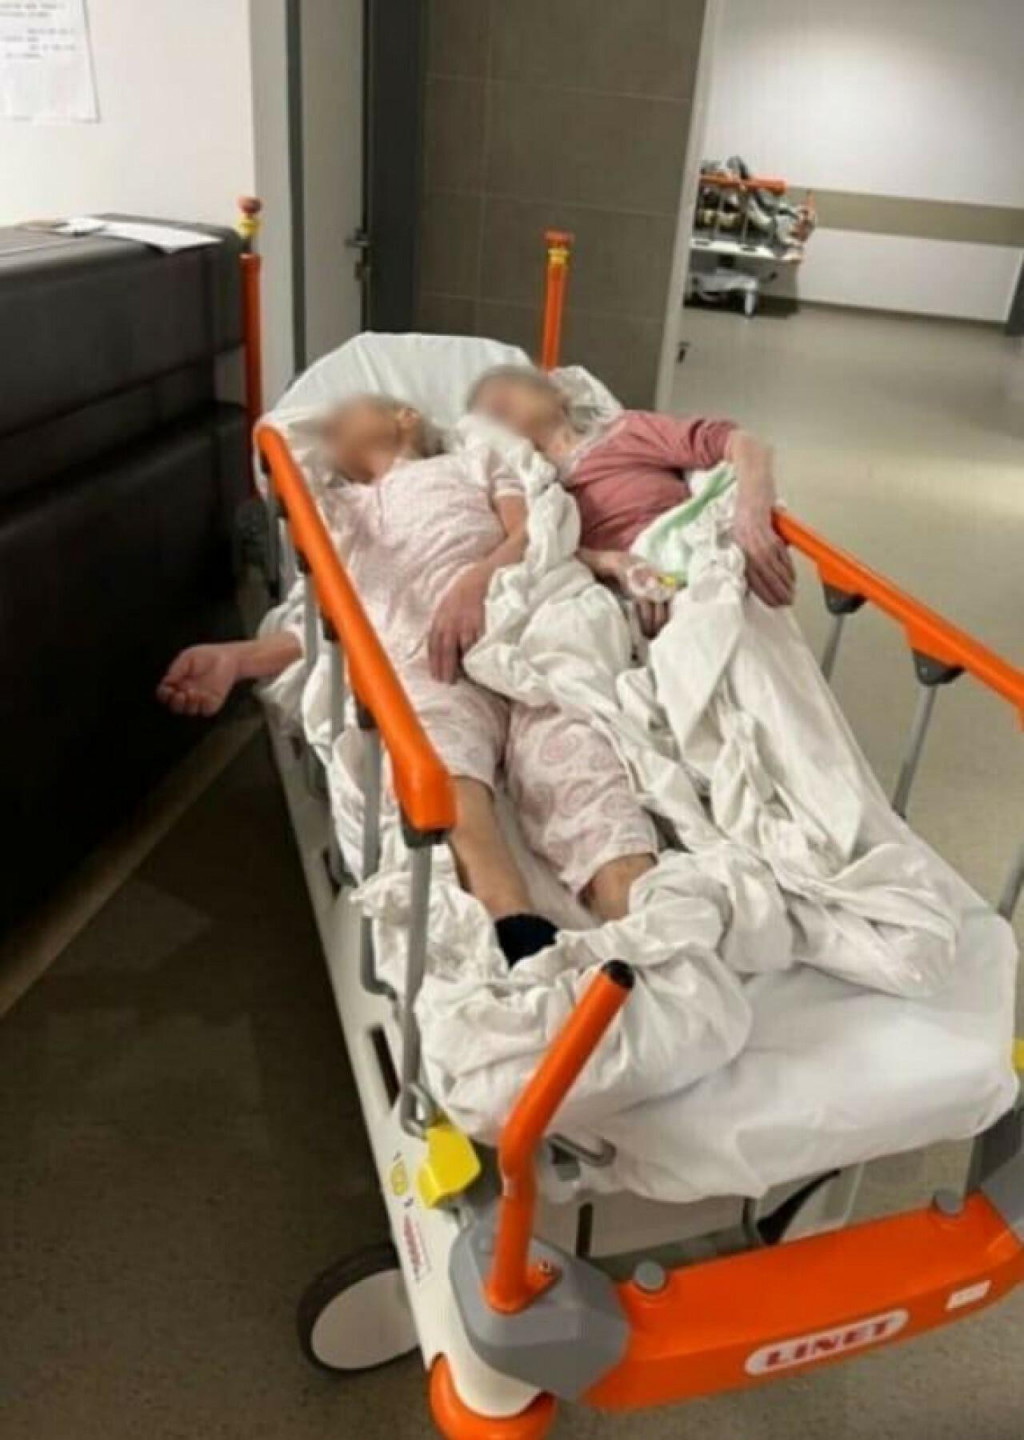 &lt;p&gt;Dvije žene smještene na uskom krevetu u bolnici u Sisku&lt;/p&gt;

&lt;p&gt; &lt;/p&gt;